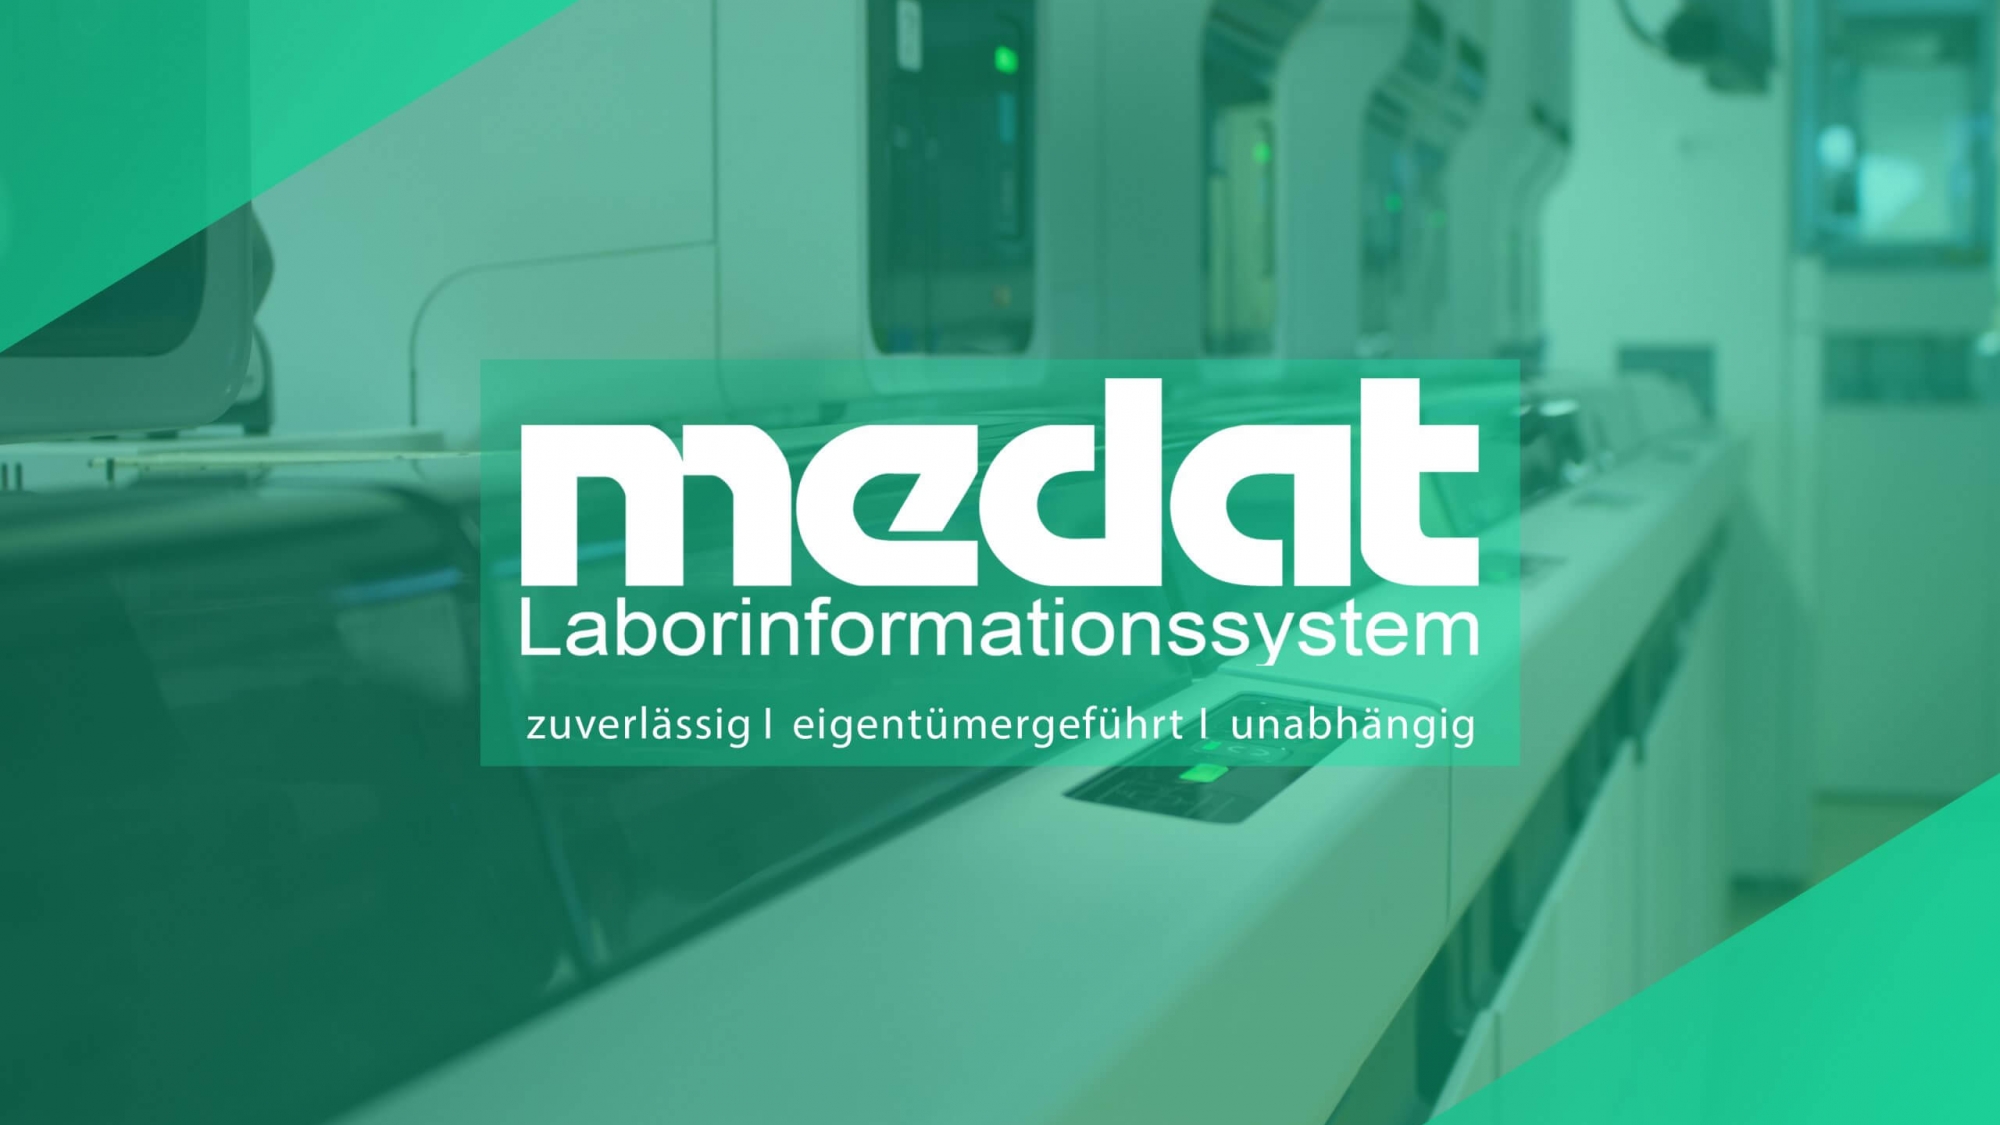 Im Bild ist das Medat Laborinformationssystem Logo mit dem Untertitel zuverlässig - eigentümergeführt - unabhängig zu sehen. Und im Hintergrund ein Foto eines hochmodernen Labors.